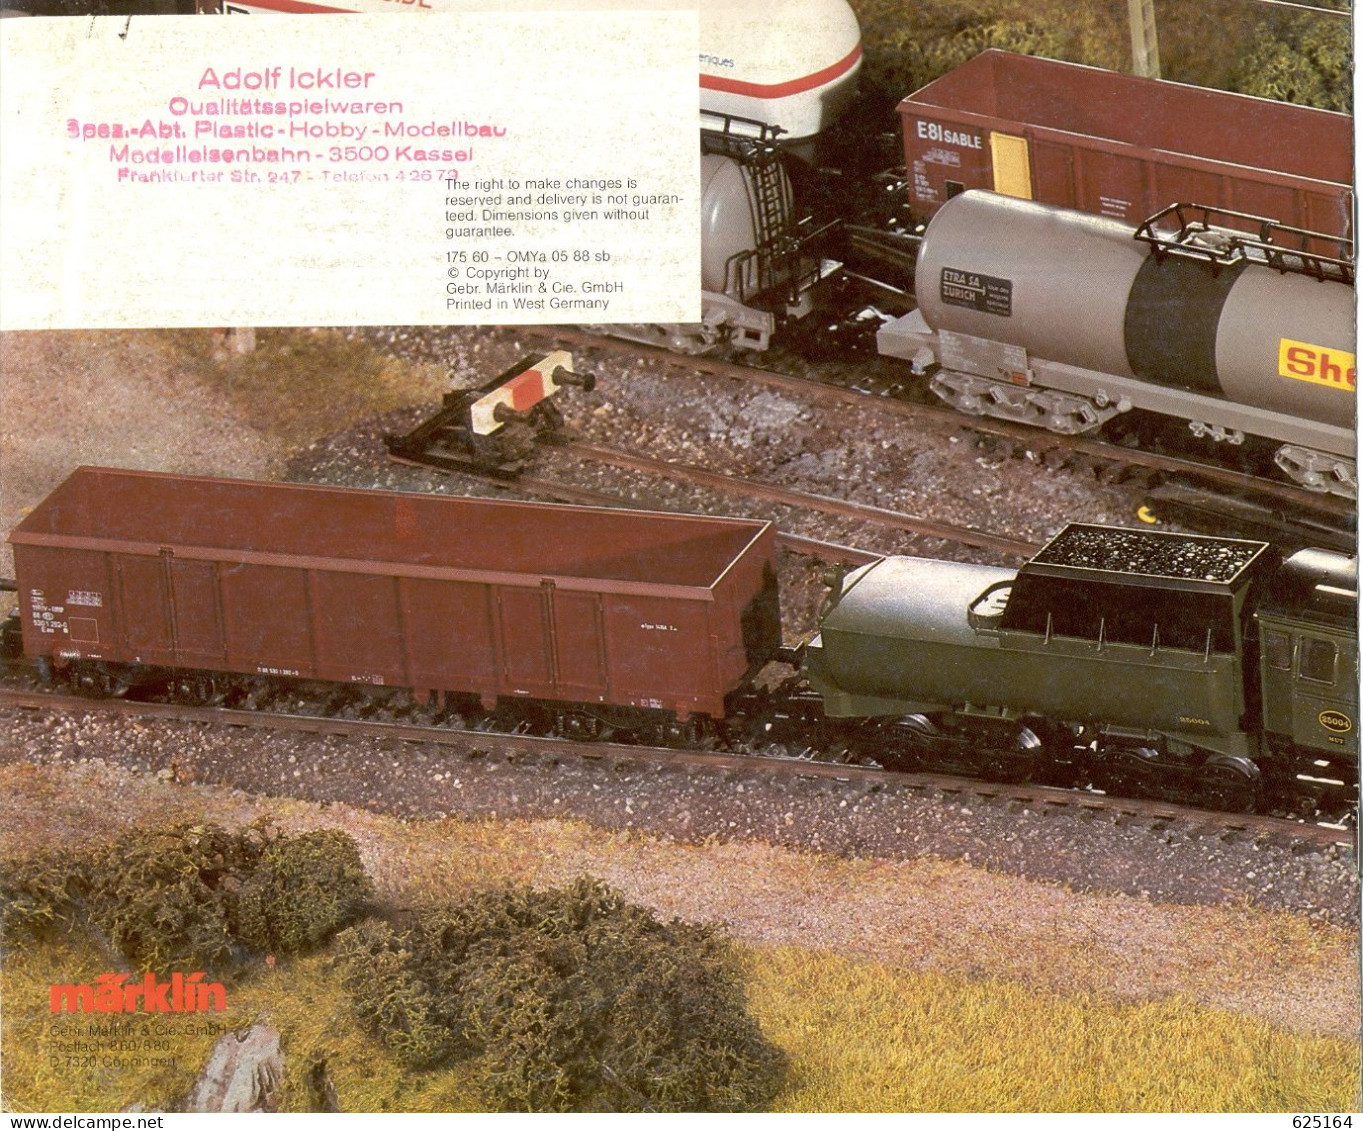 CatalogueMärklin 1988/89 Export Modelle Maquettes Exportation - En Allemand, Anglais Et Français - Francese